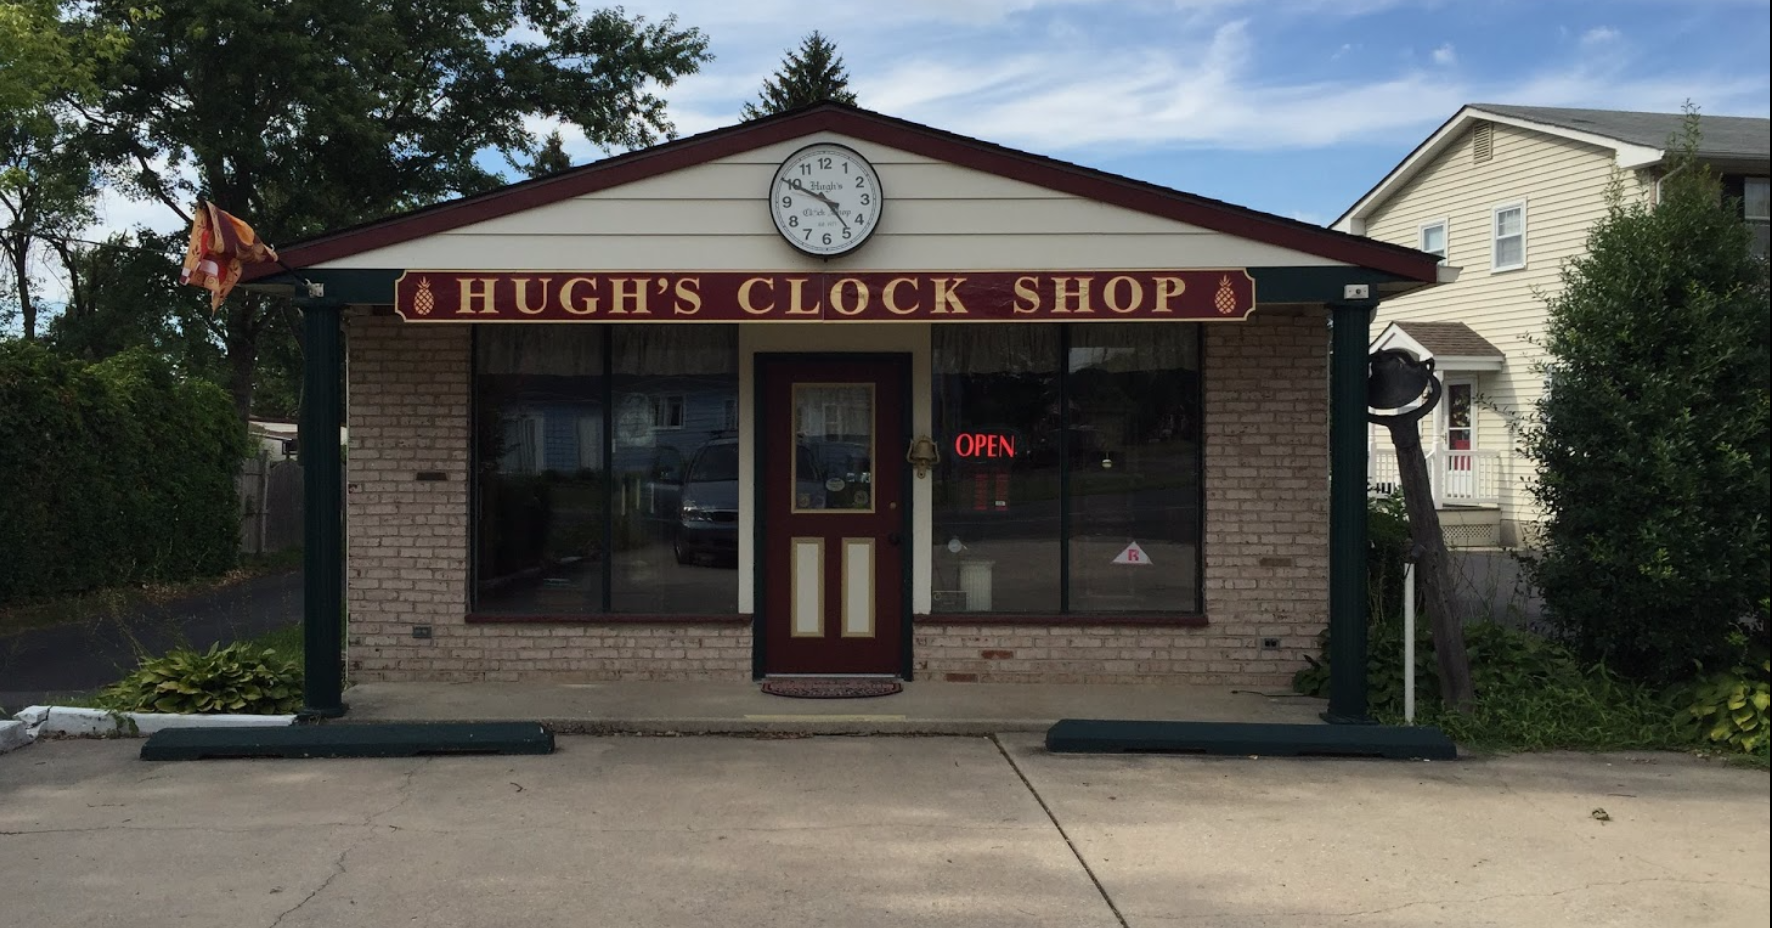 Hugh's Clock Shop